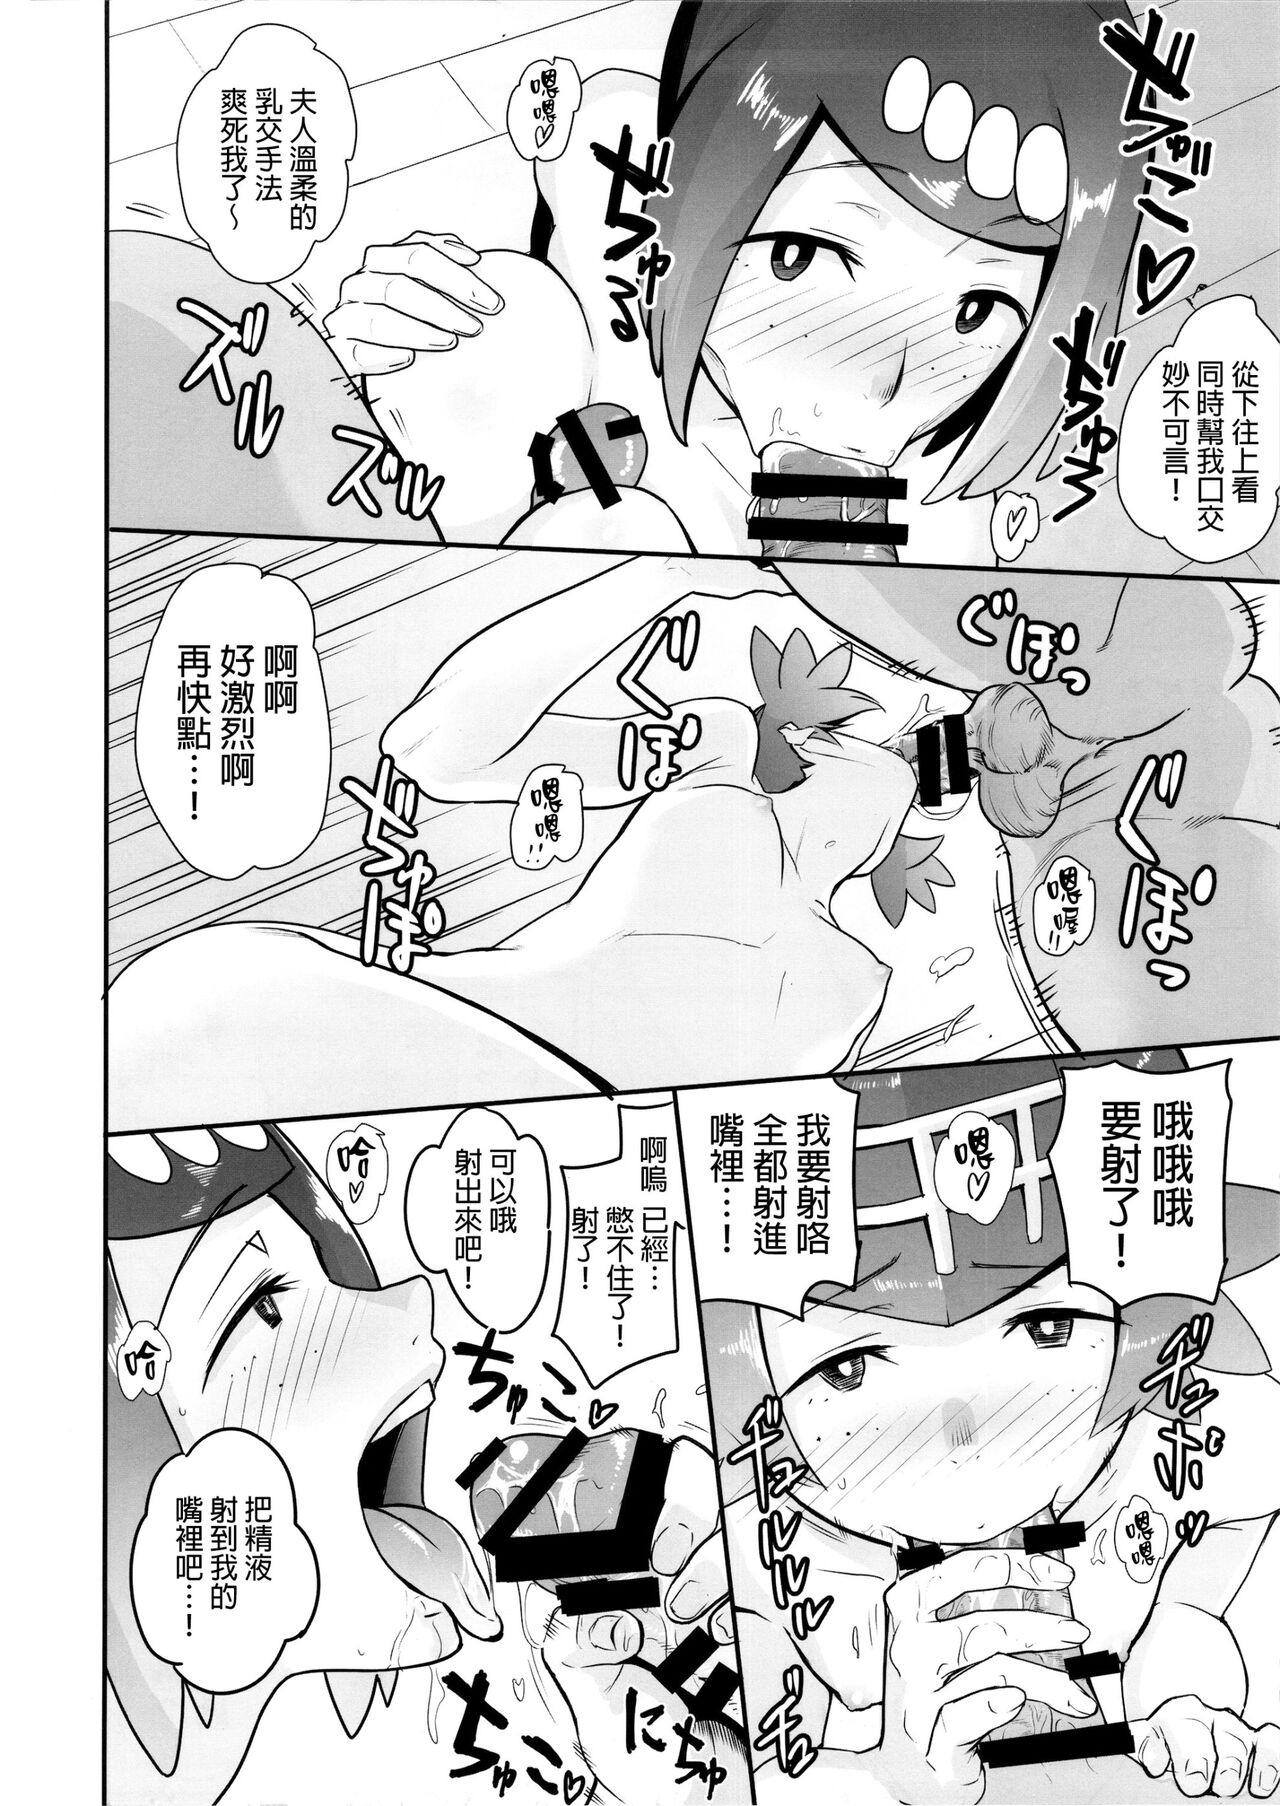 Squirting Alola no Yoru no Sugata 1-6 + Galar no Yoru no Sugata - Pokemon | pocket monsters Licking - Page 11